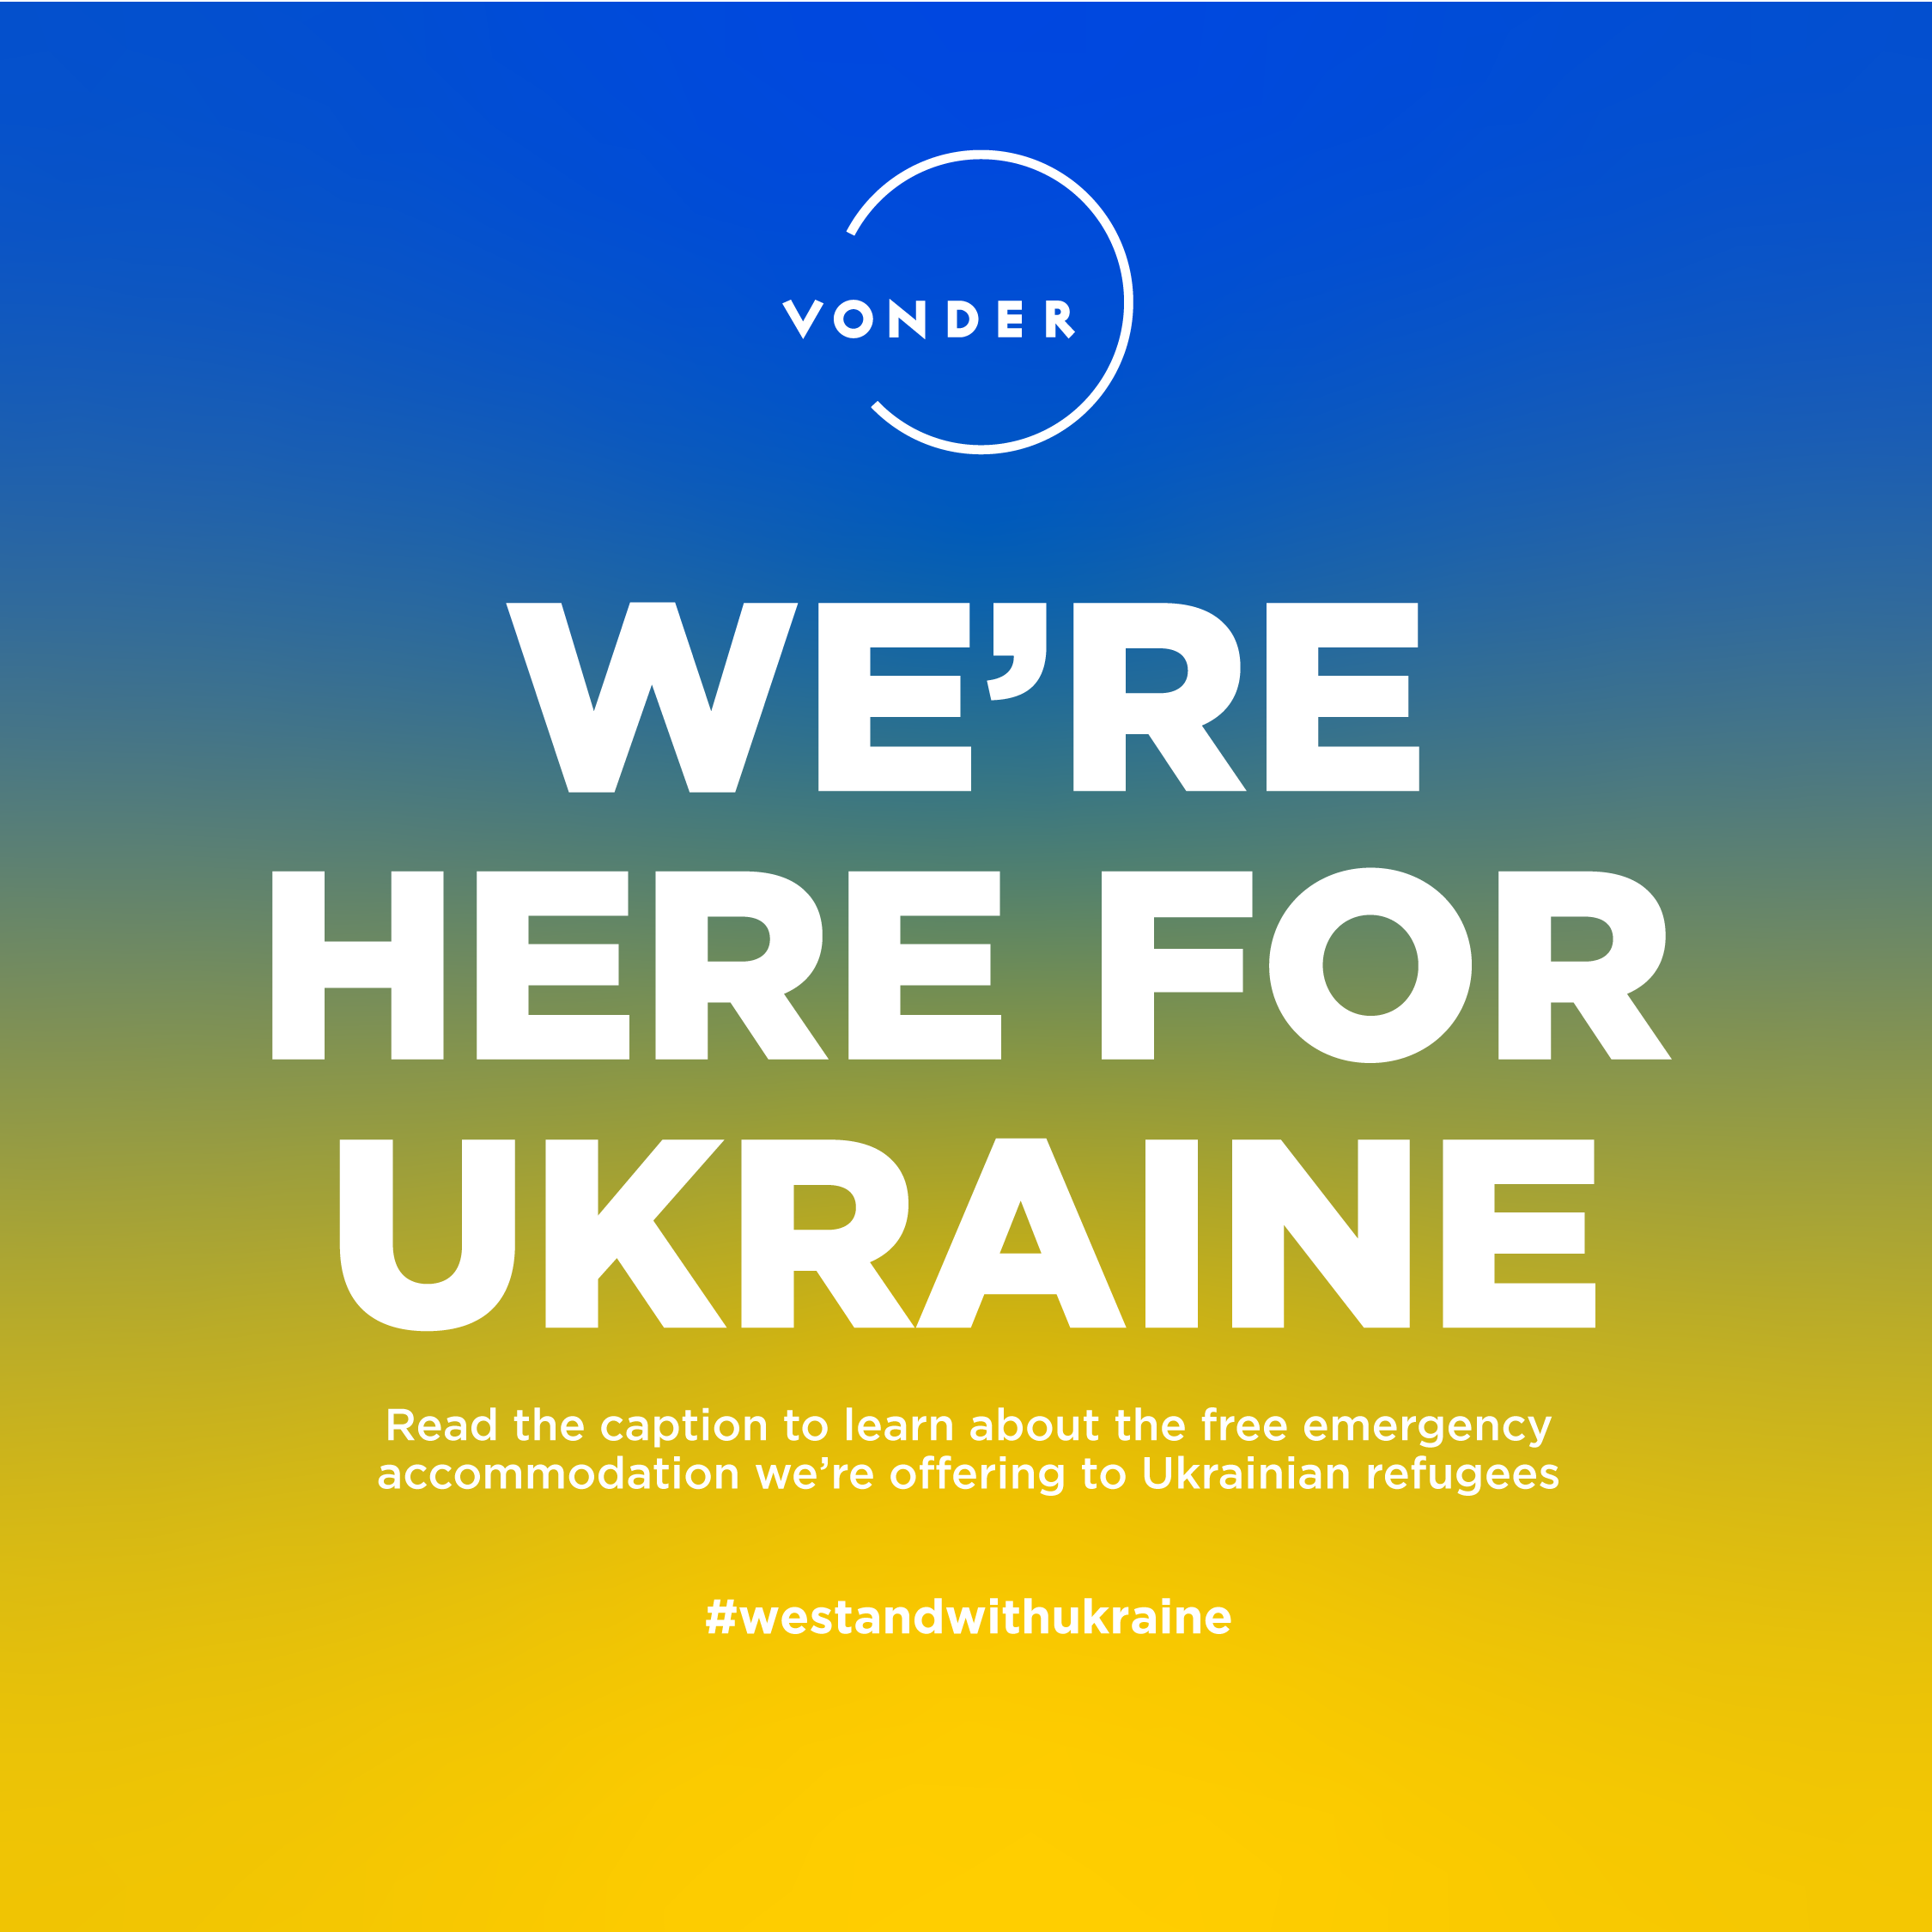 VONDER OFFERS ACCOMODATION TO HELP UKRAINIAN REFUGEES